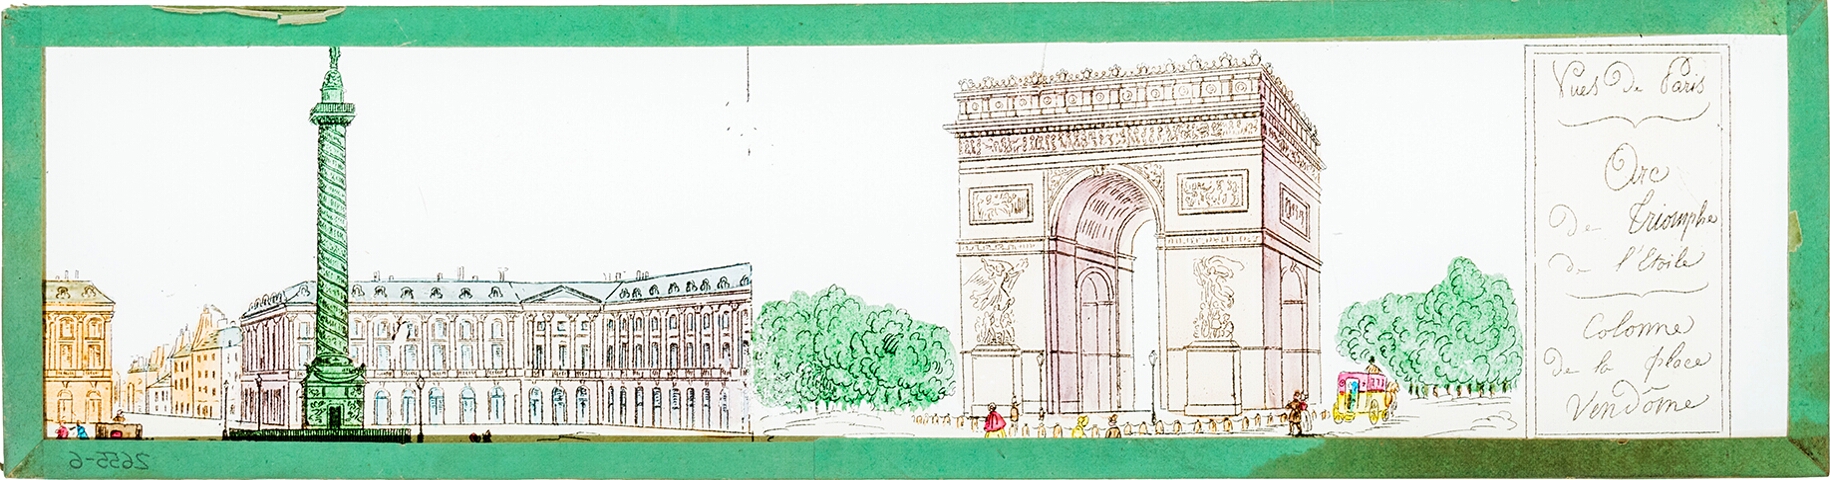 Arc de Triomphe de l'Etoile / Colonne de la place Vendôme.